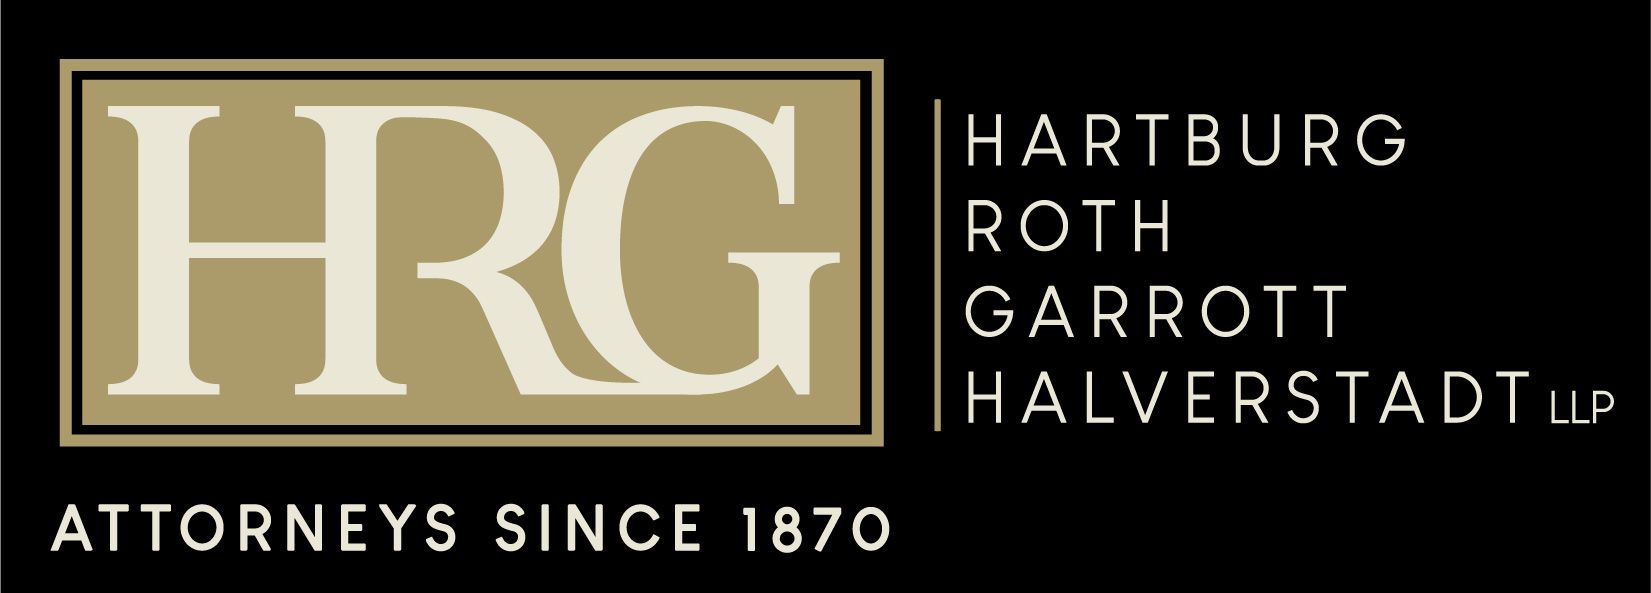 HRGHG LLP - Hartburg, Roth, Garrott, Halverstadt & Garrett, Logo - Black